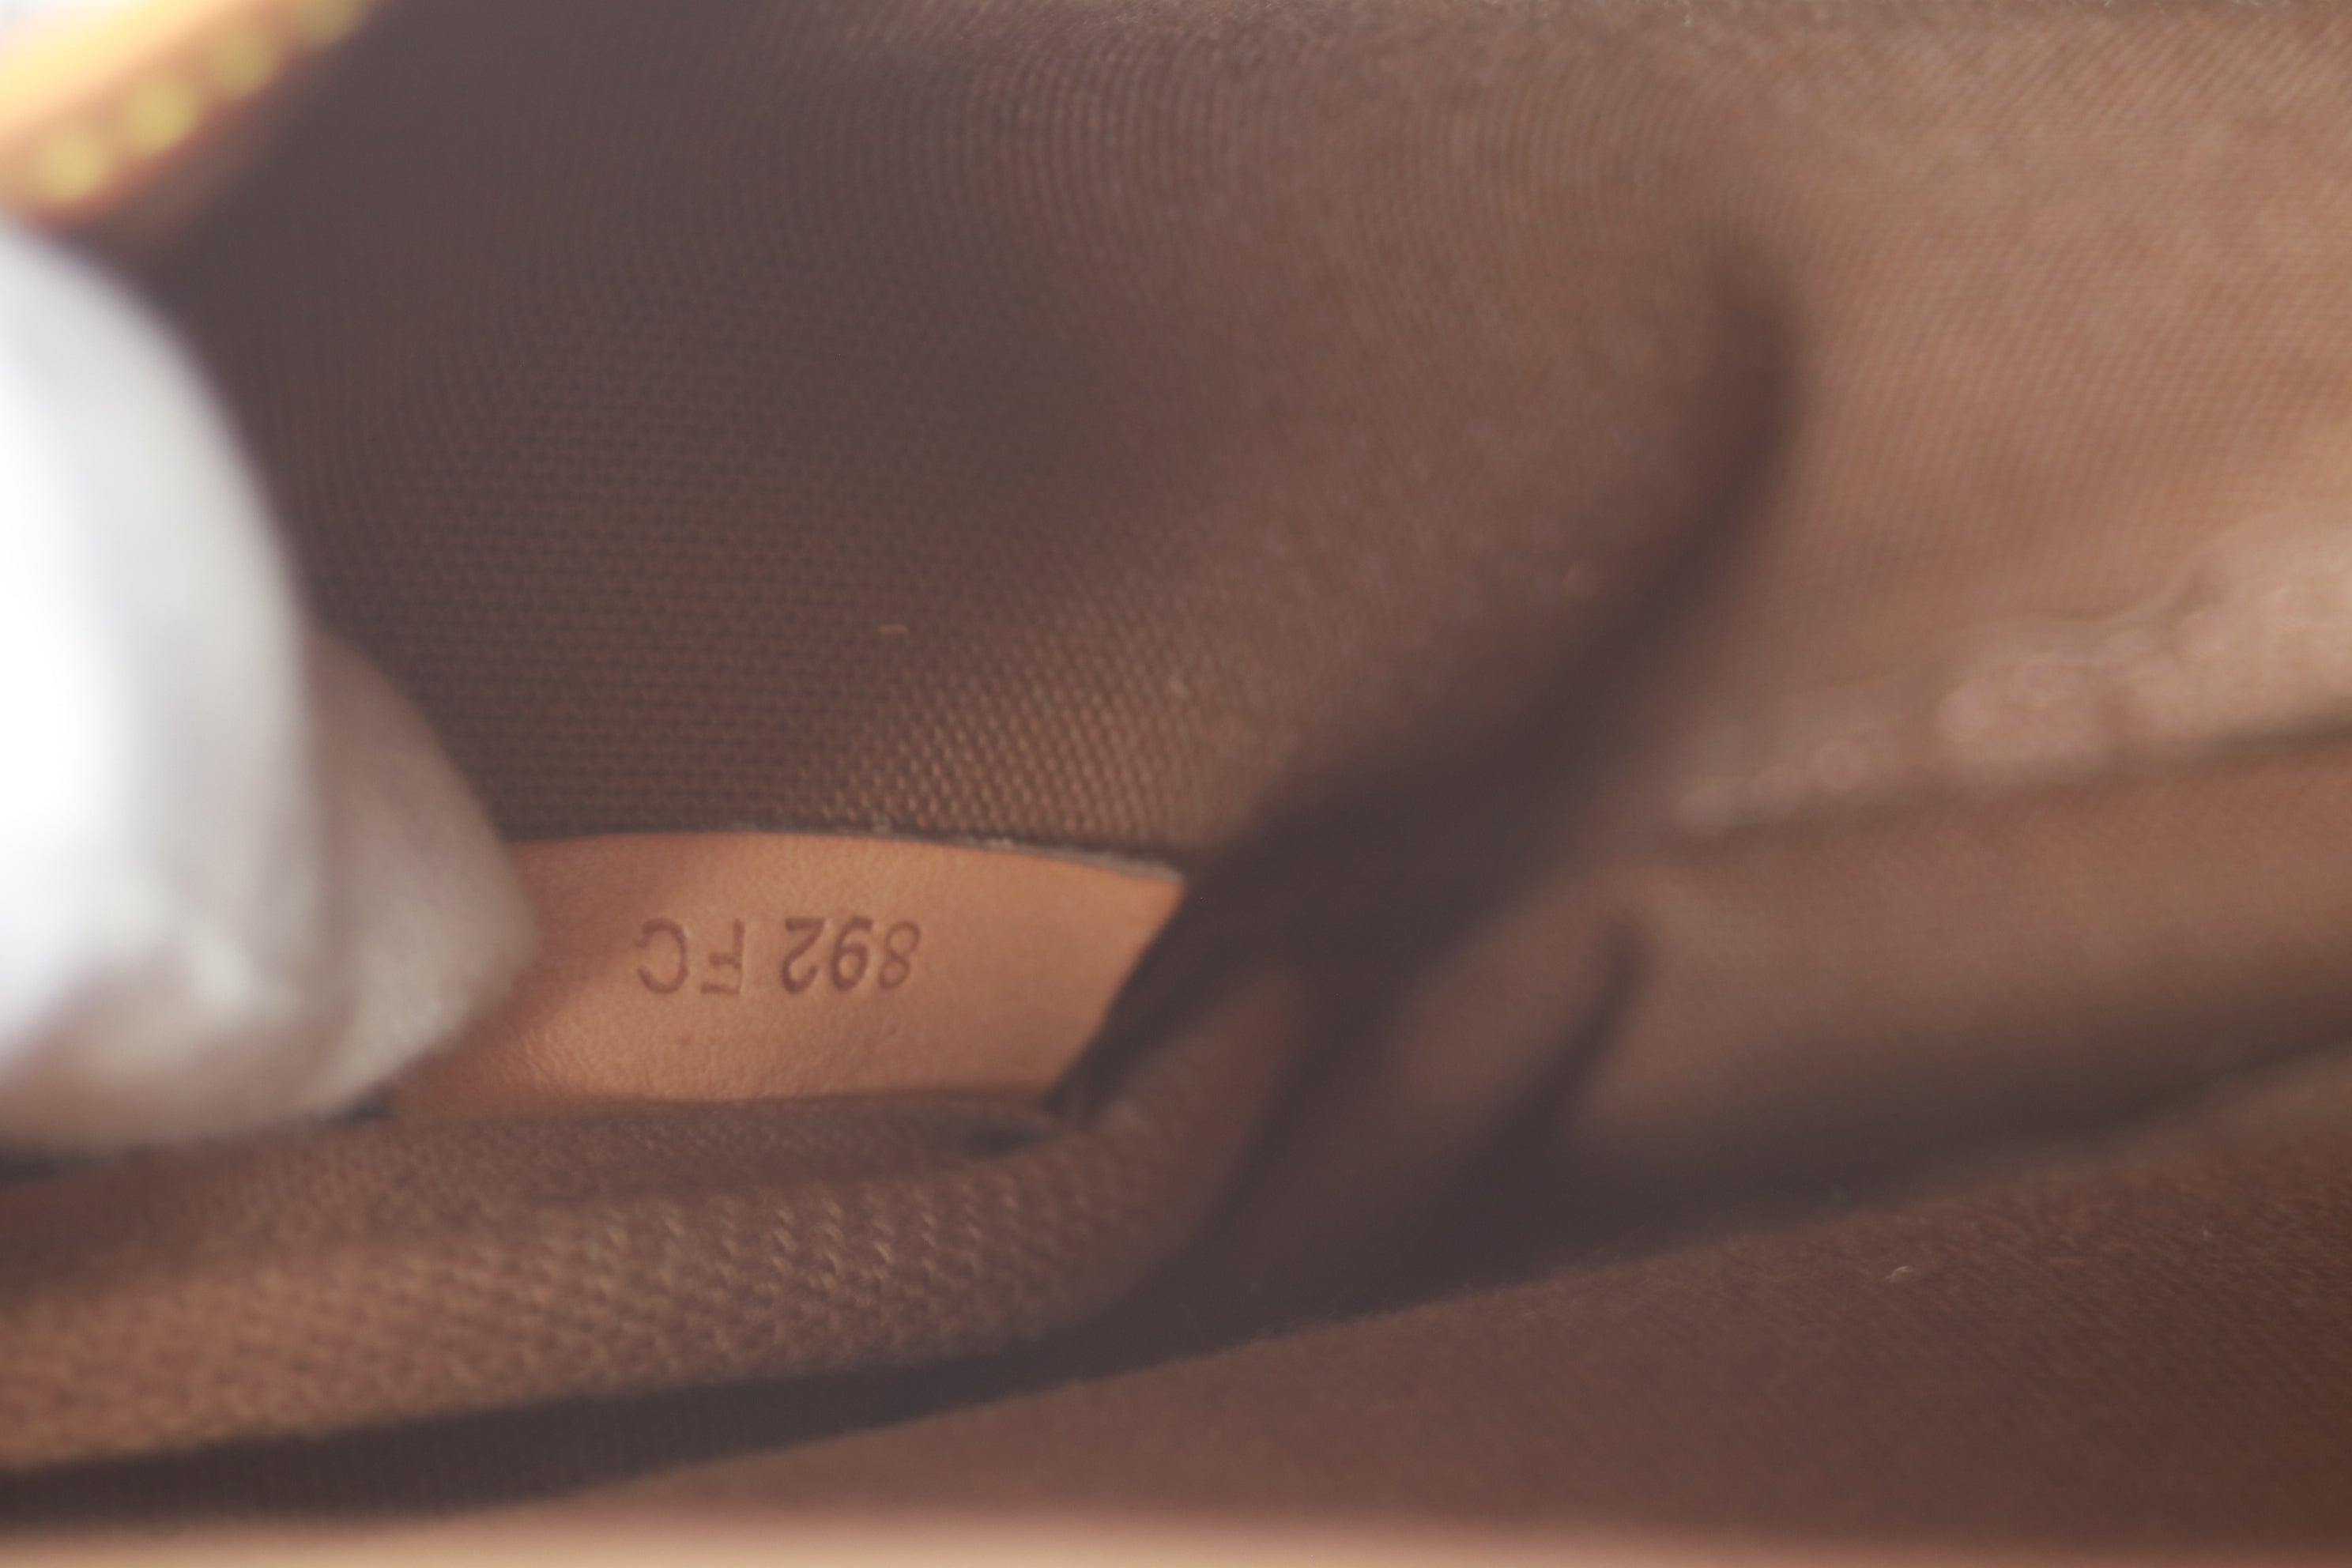 Louis Vuitton Saumur 30 Shoulder Bag Used (6559)